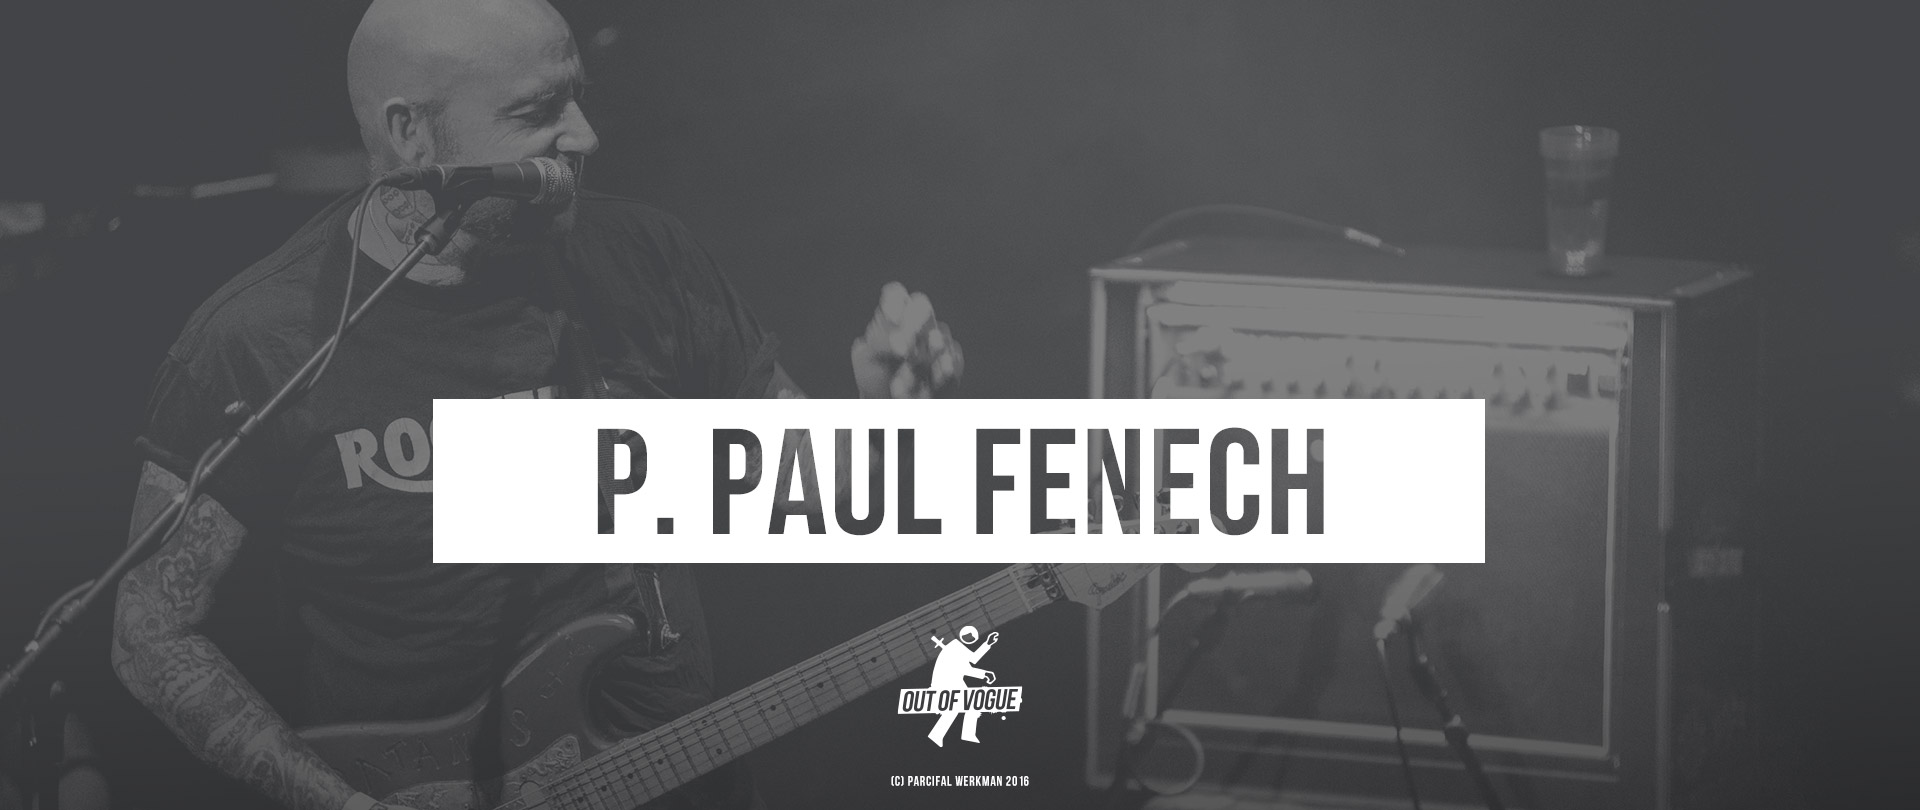 P. Paul Fenech at OUT OF VOGUE SHOP / EN